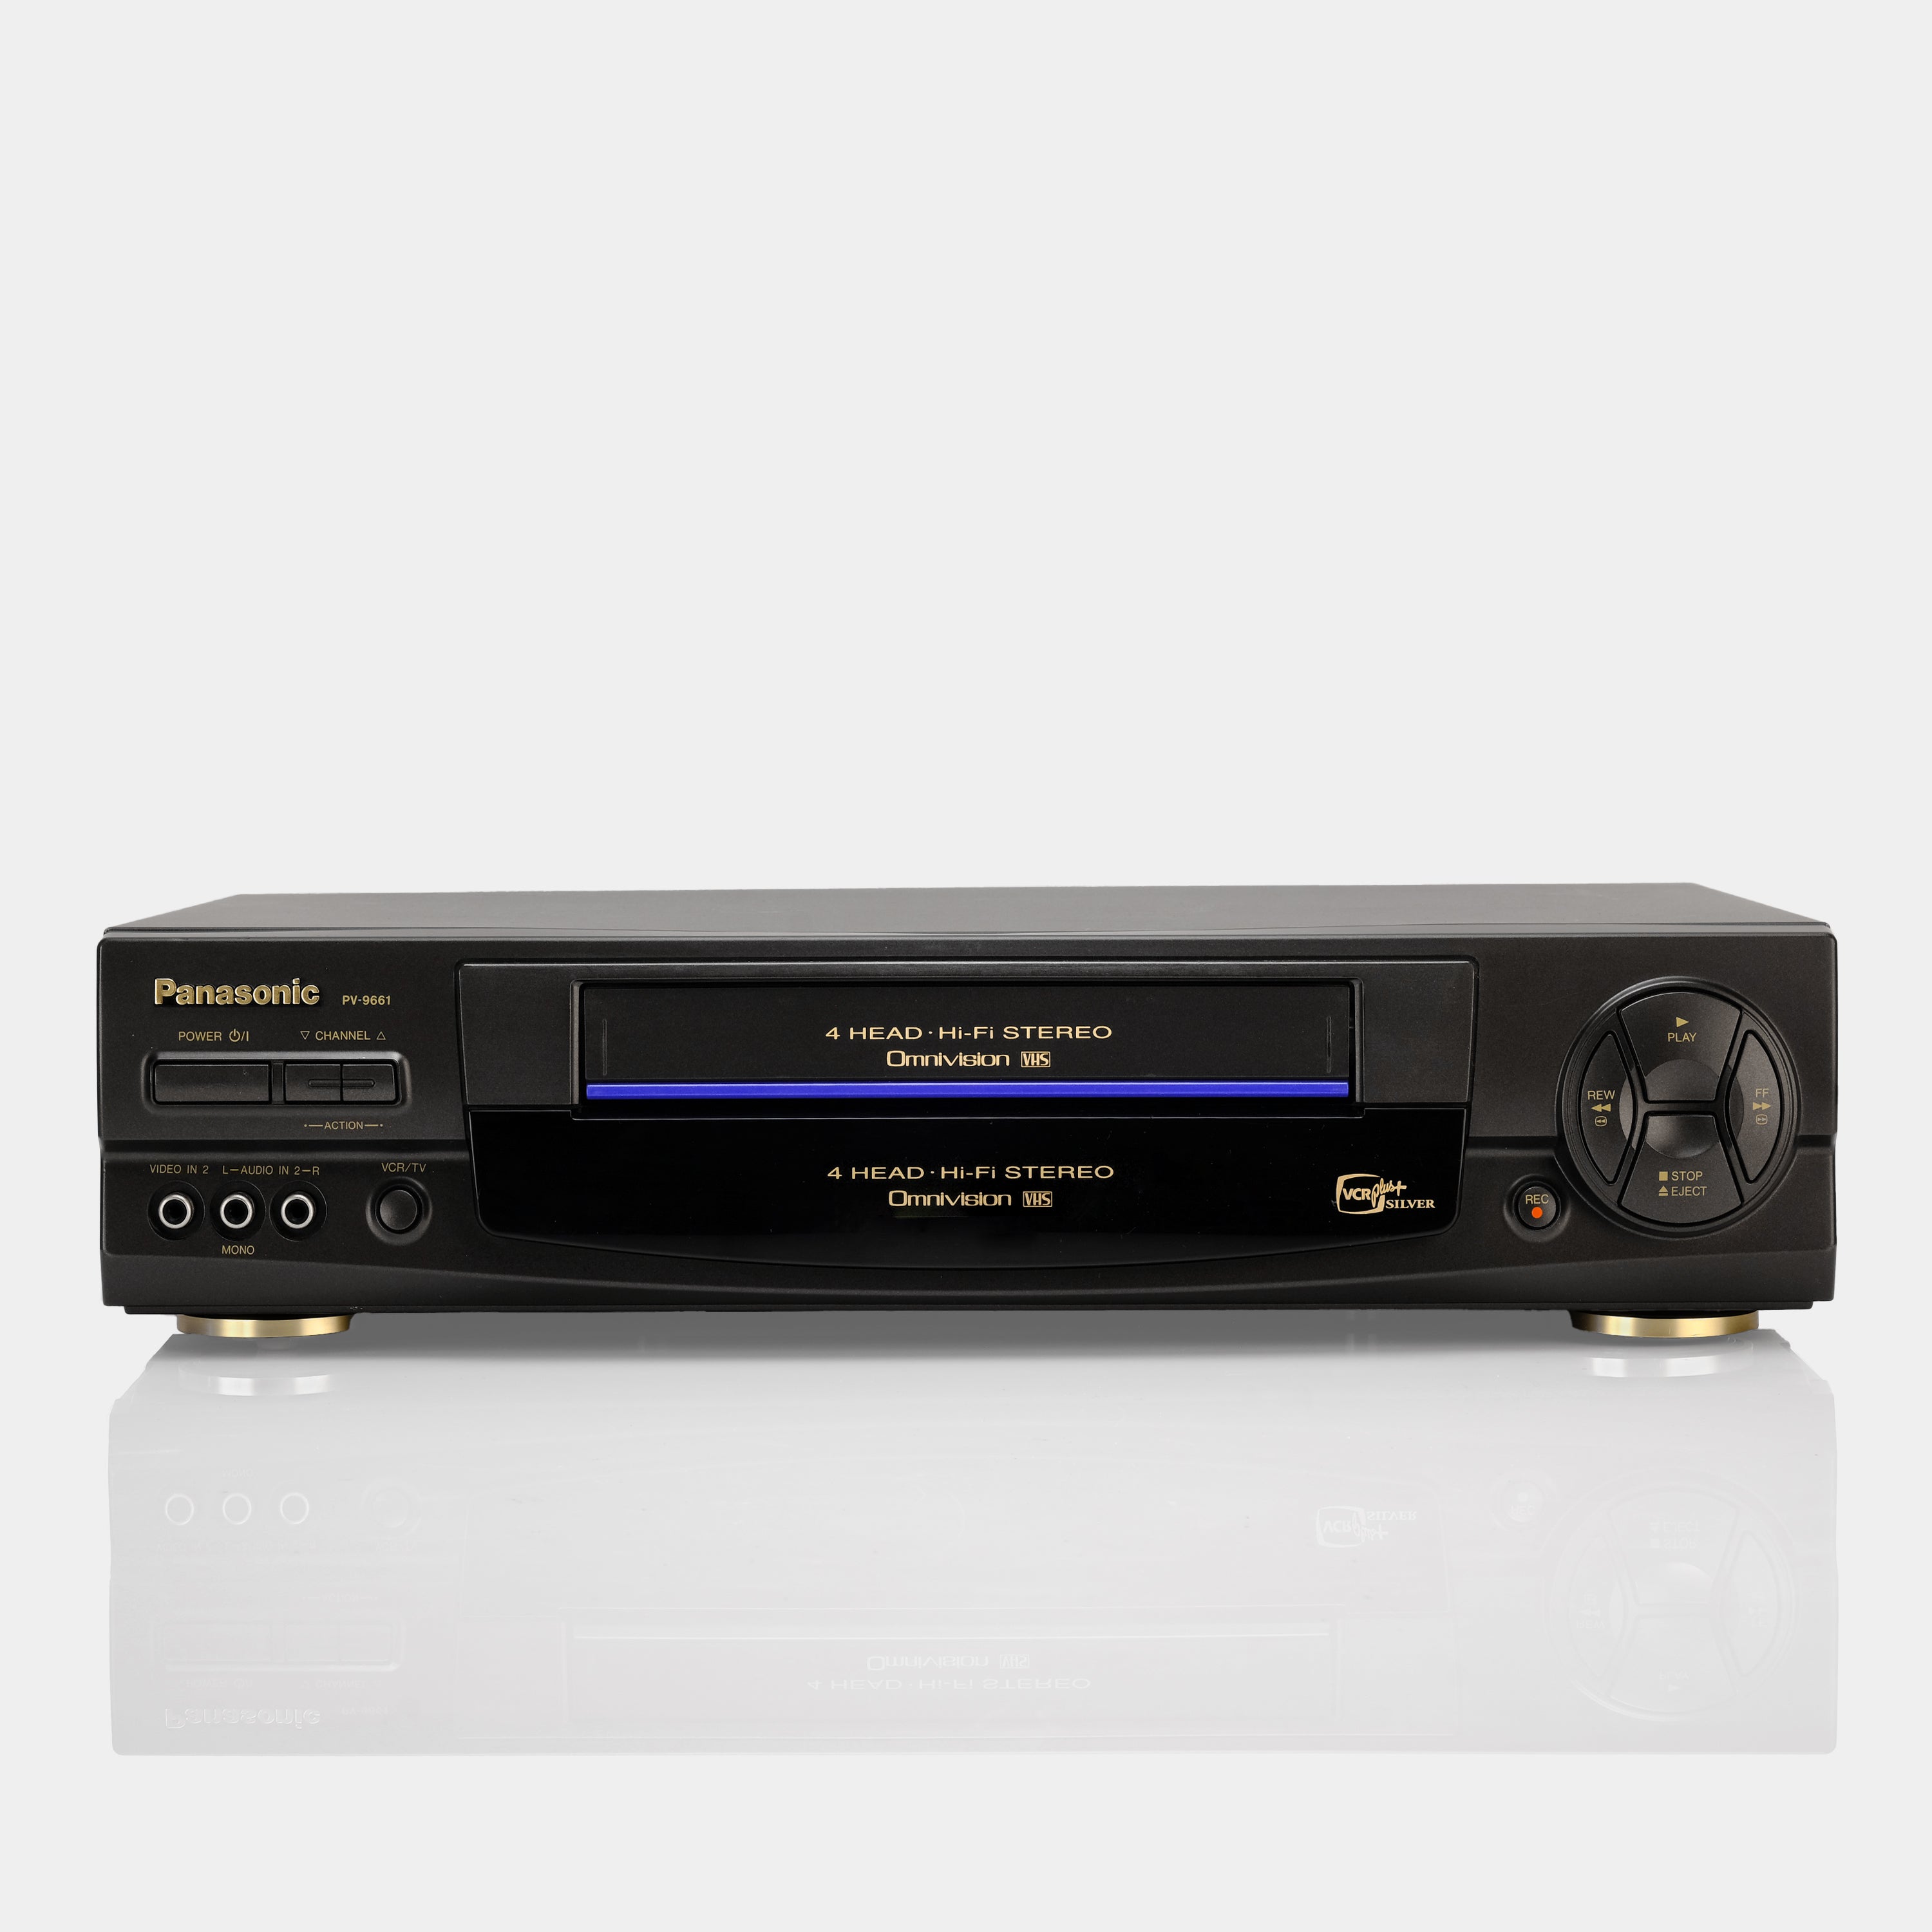 Panasonic PV-9661 VCR VHS Player